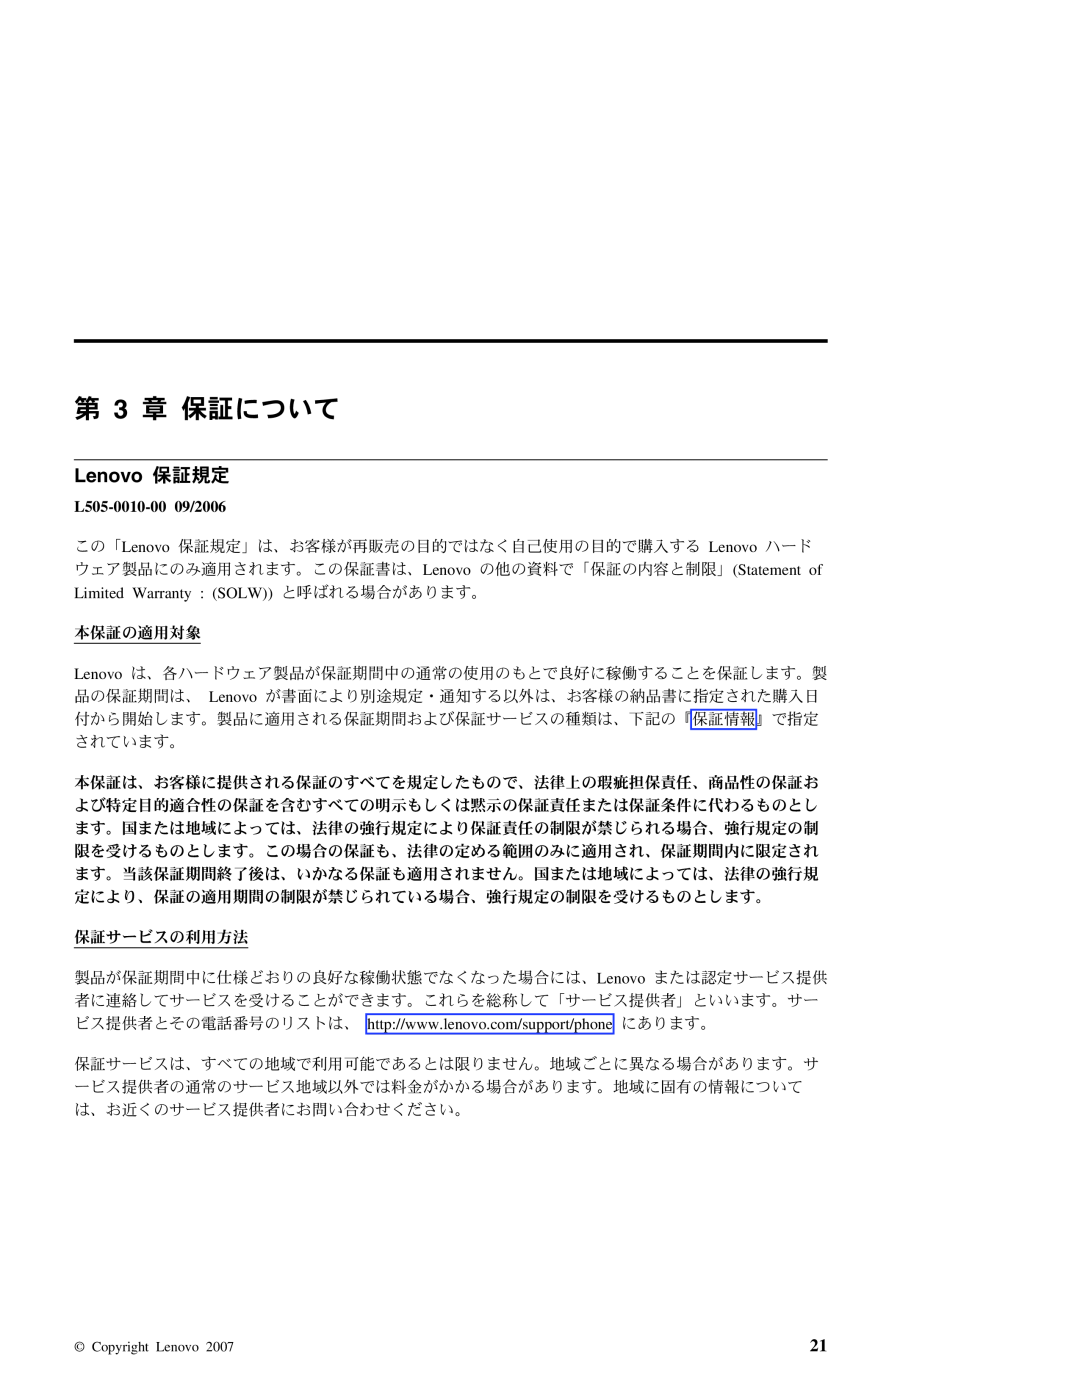 Lenovo 3000 manual 第 3 章 保証について, Lenovo 保証規定, L505-0010-0009/2006 